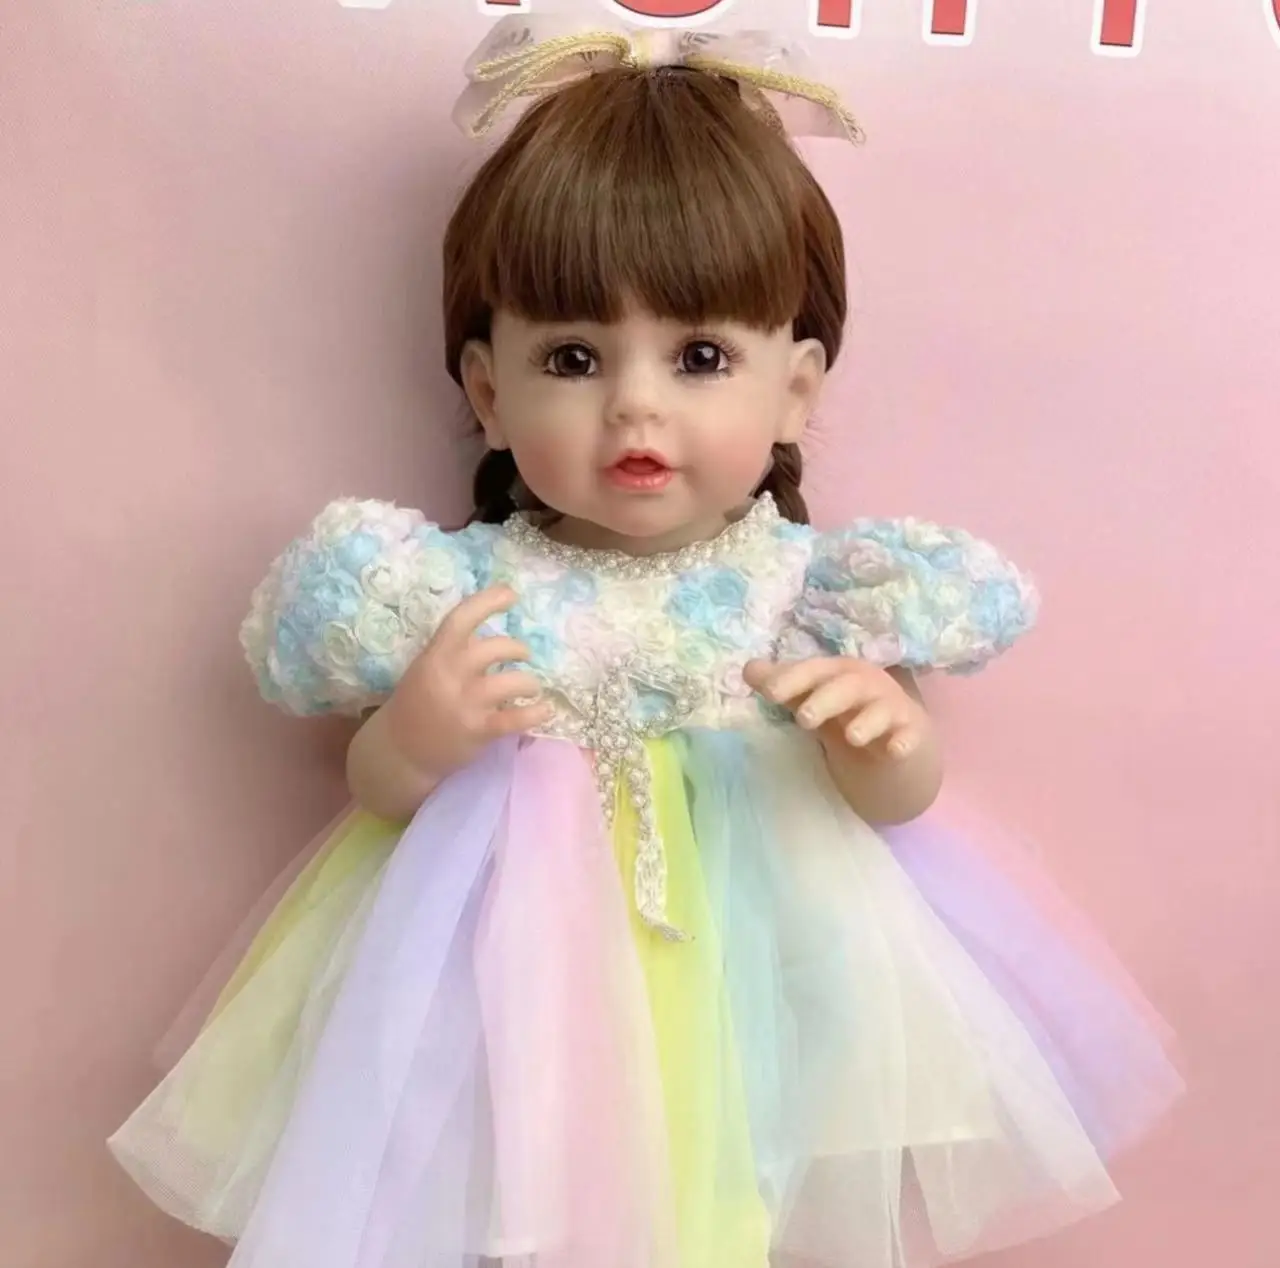 Подлинное Новое Платье Принцессы с длинными волосами, имитация Куклы, игрушка для душа и переодевания, подарок для девочки Изображение 2